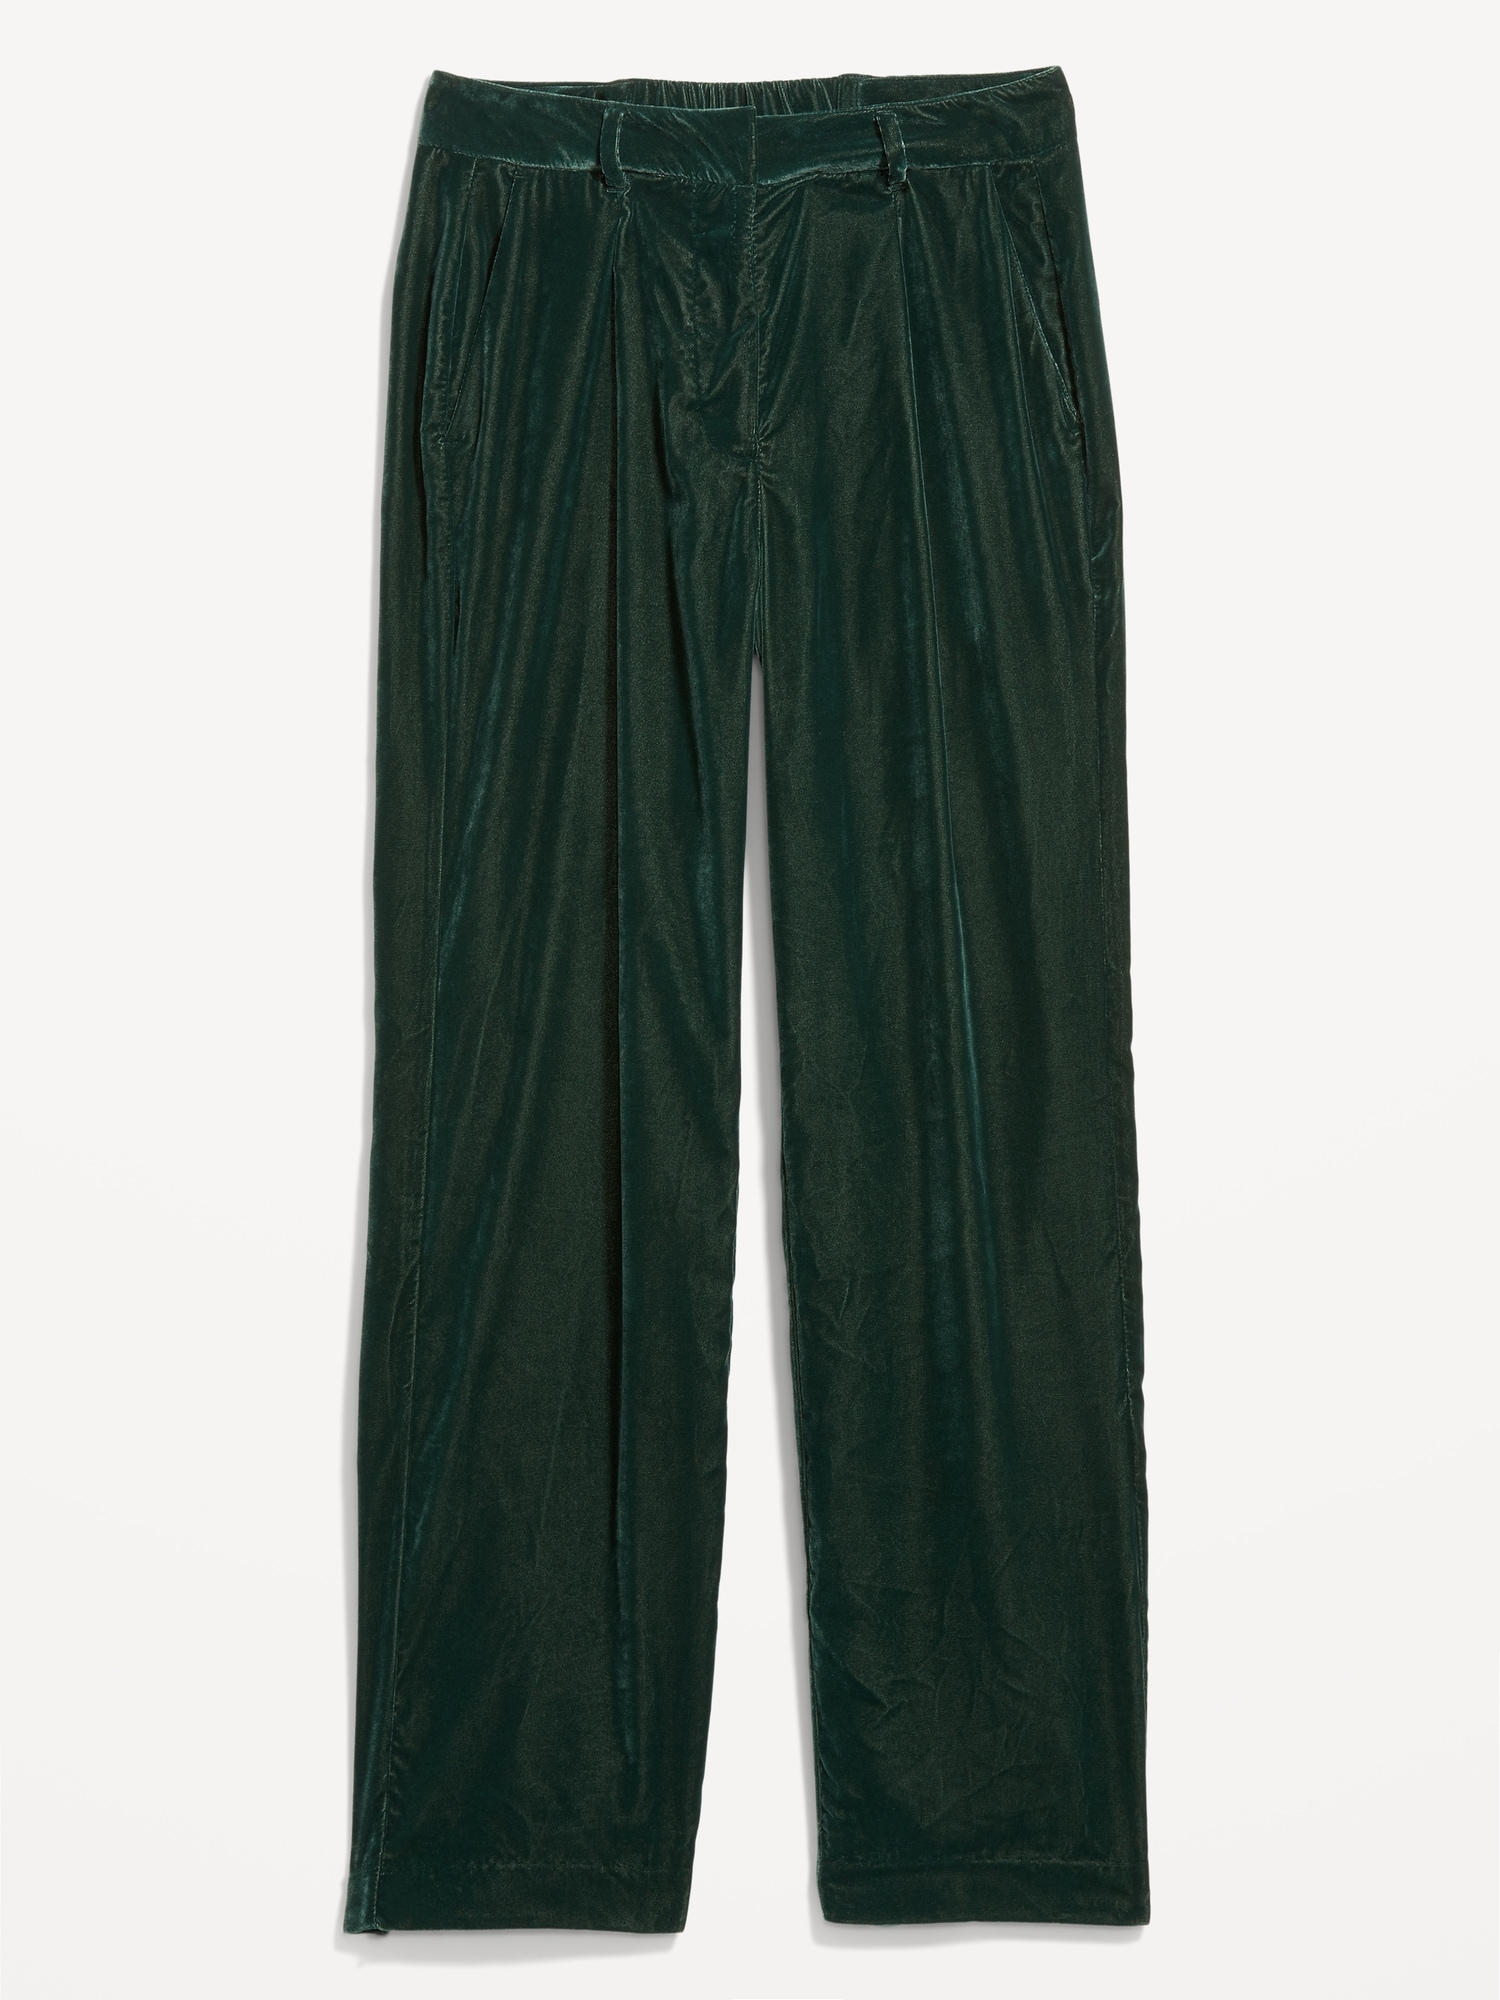 Velvet Women's Pants & Trousers - Macy's-bdsngoinhaviet.com.vn